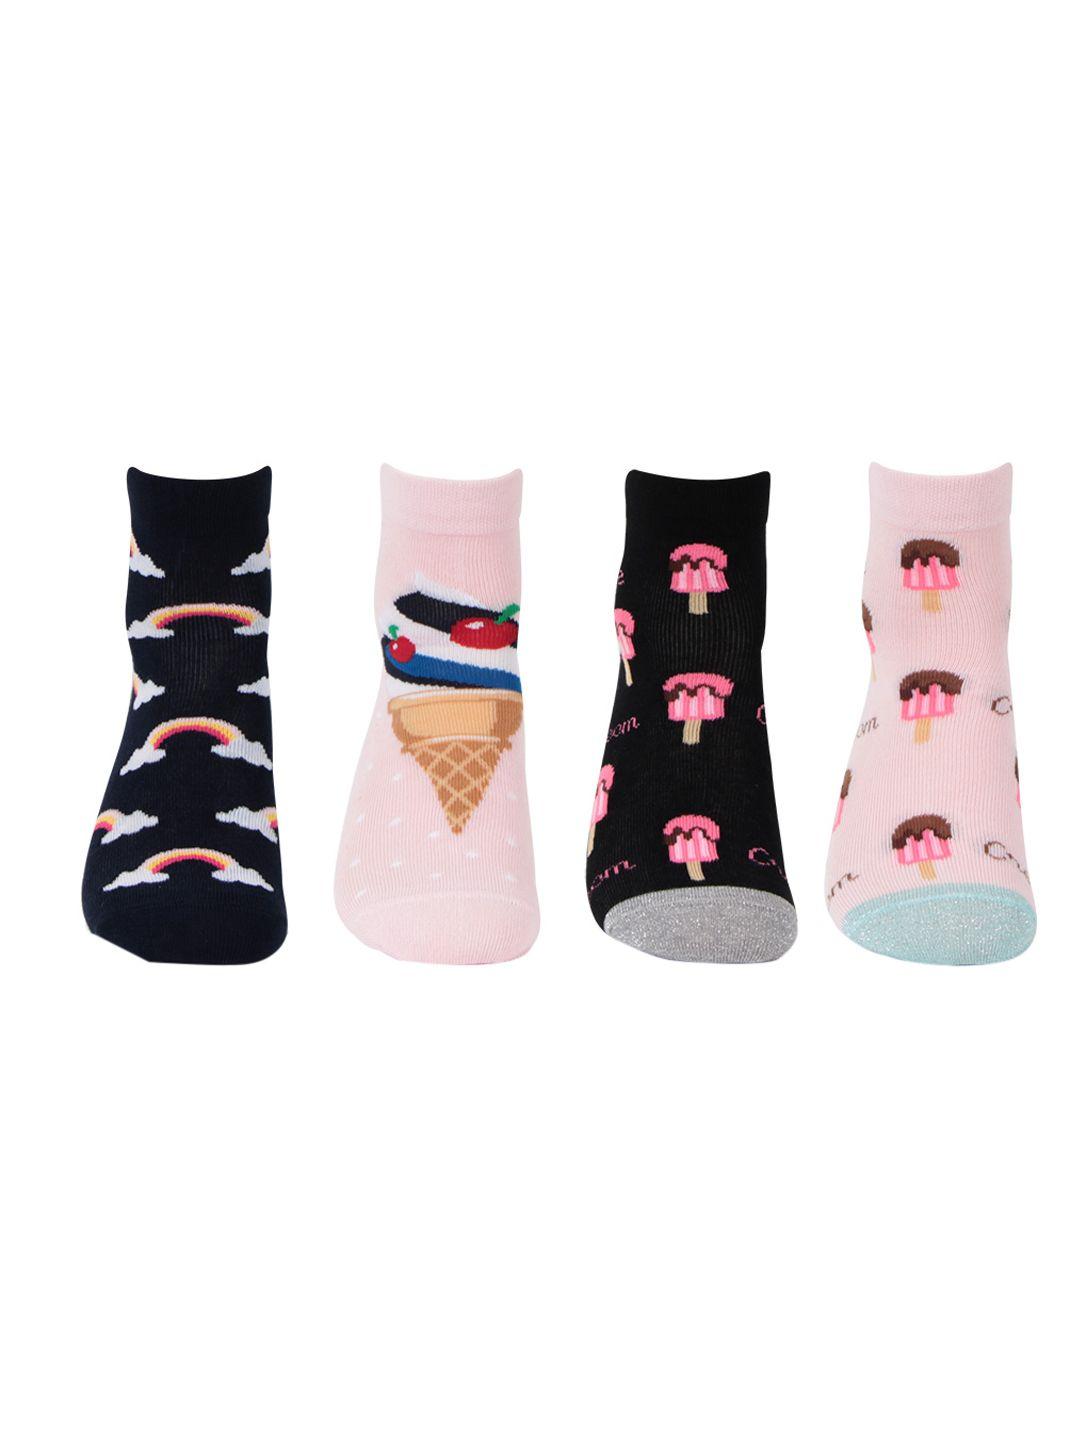 bonjour girls pack of 4 socks pink & black